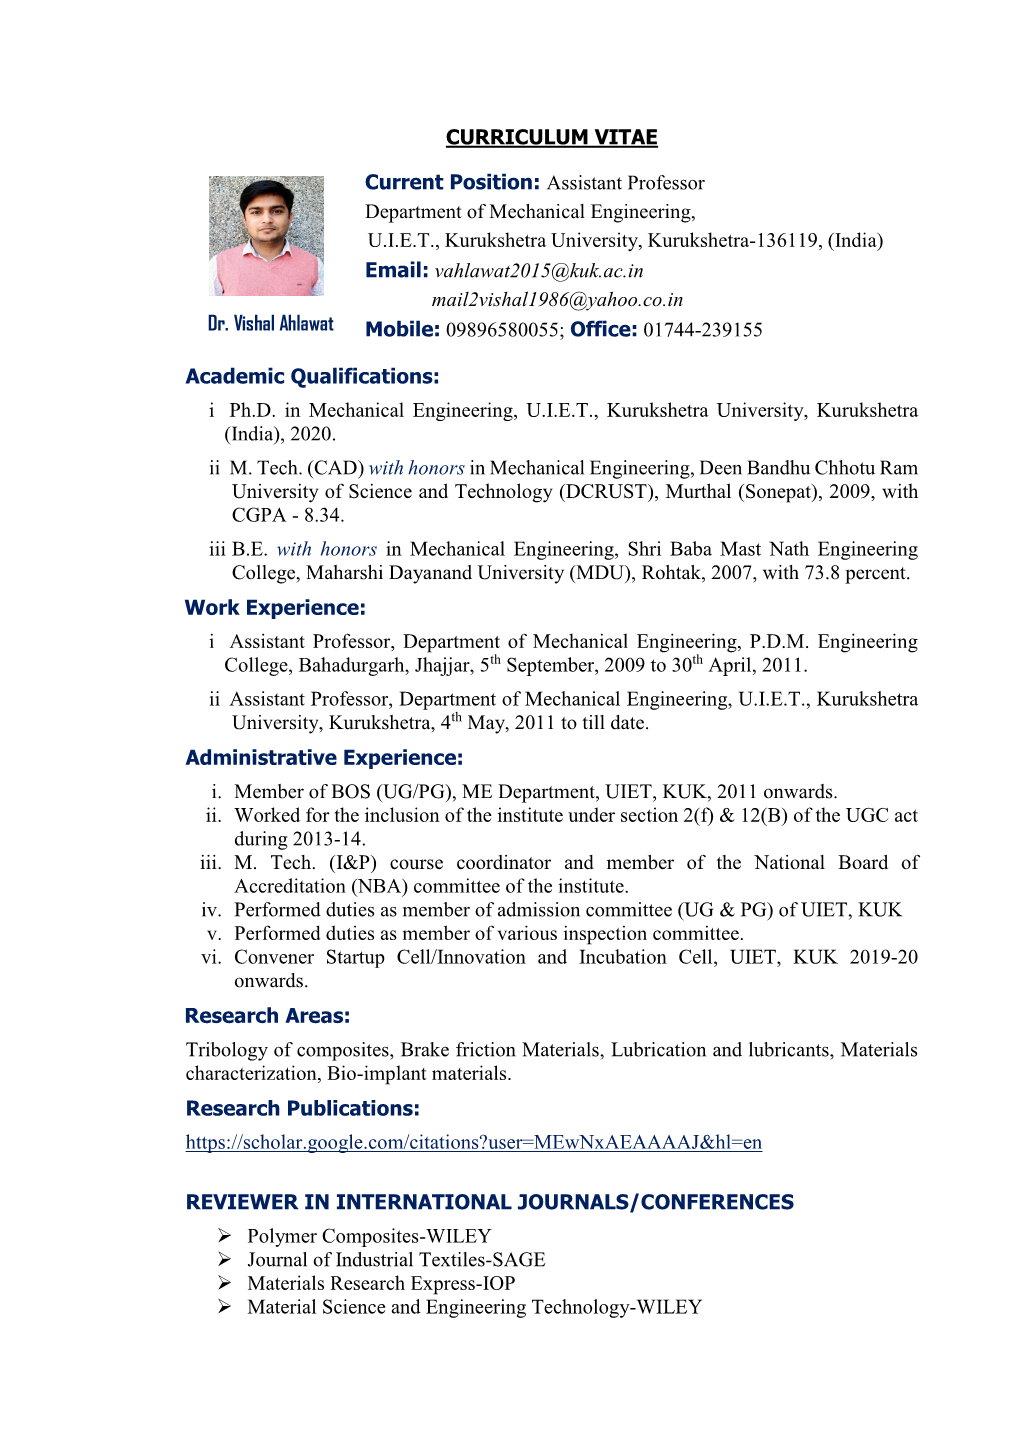 I Ph.D. in Mechanical Engineering, UIET, Kurukshetra University